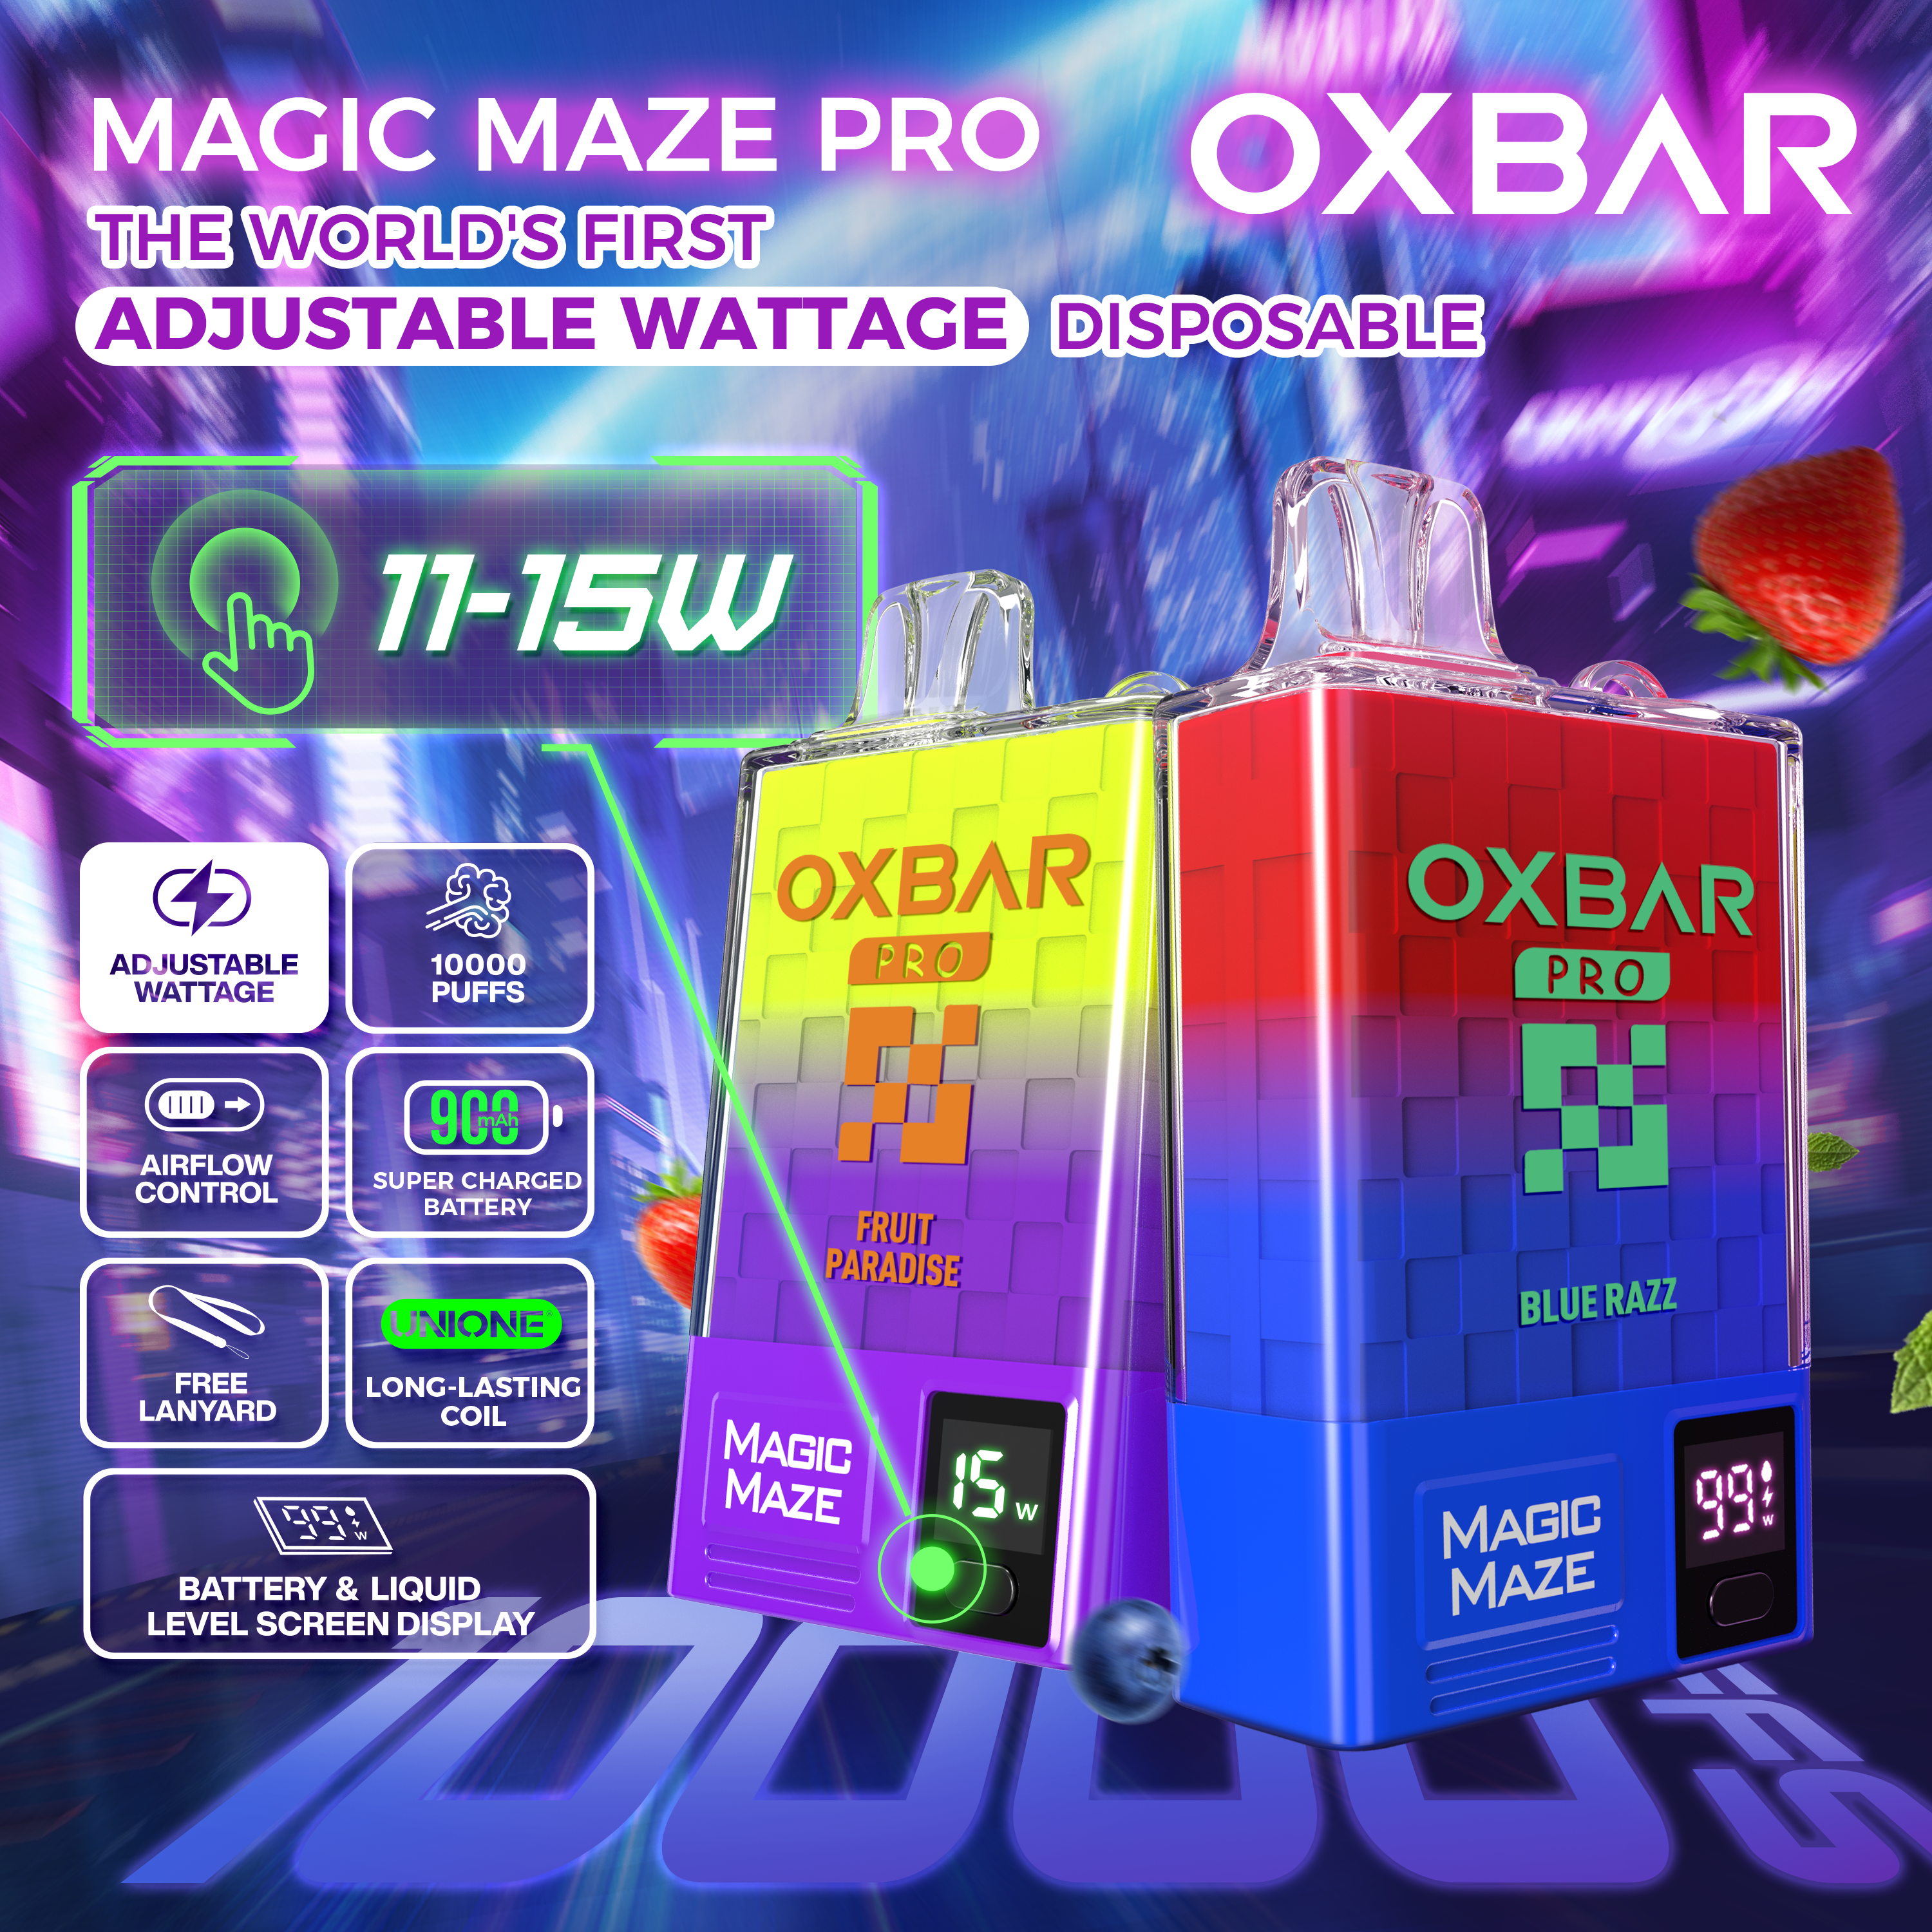 Oxbar Magic Maze 10k Puffs